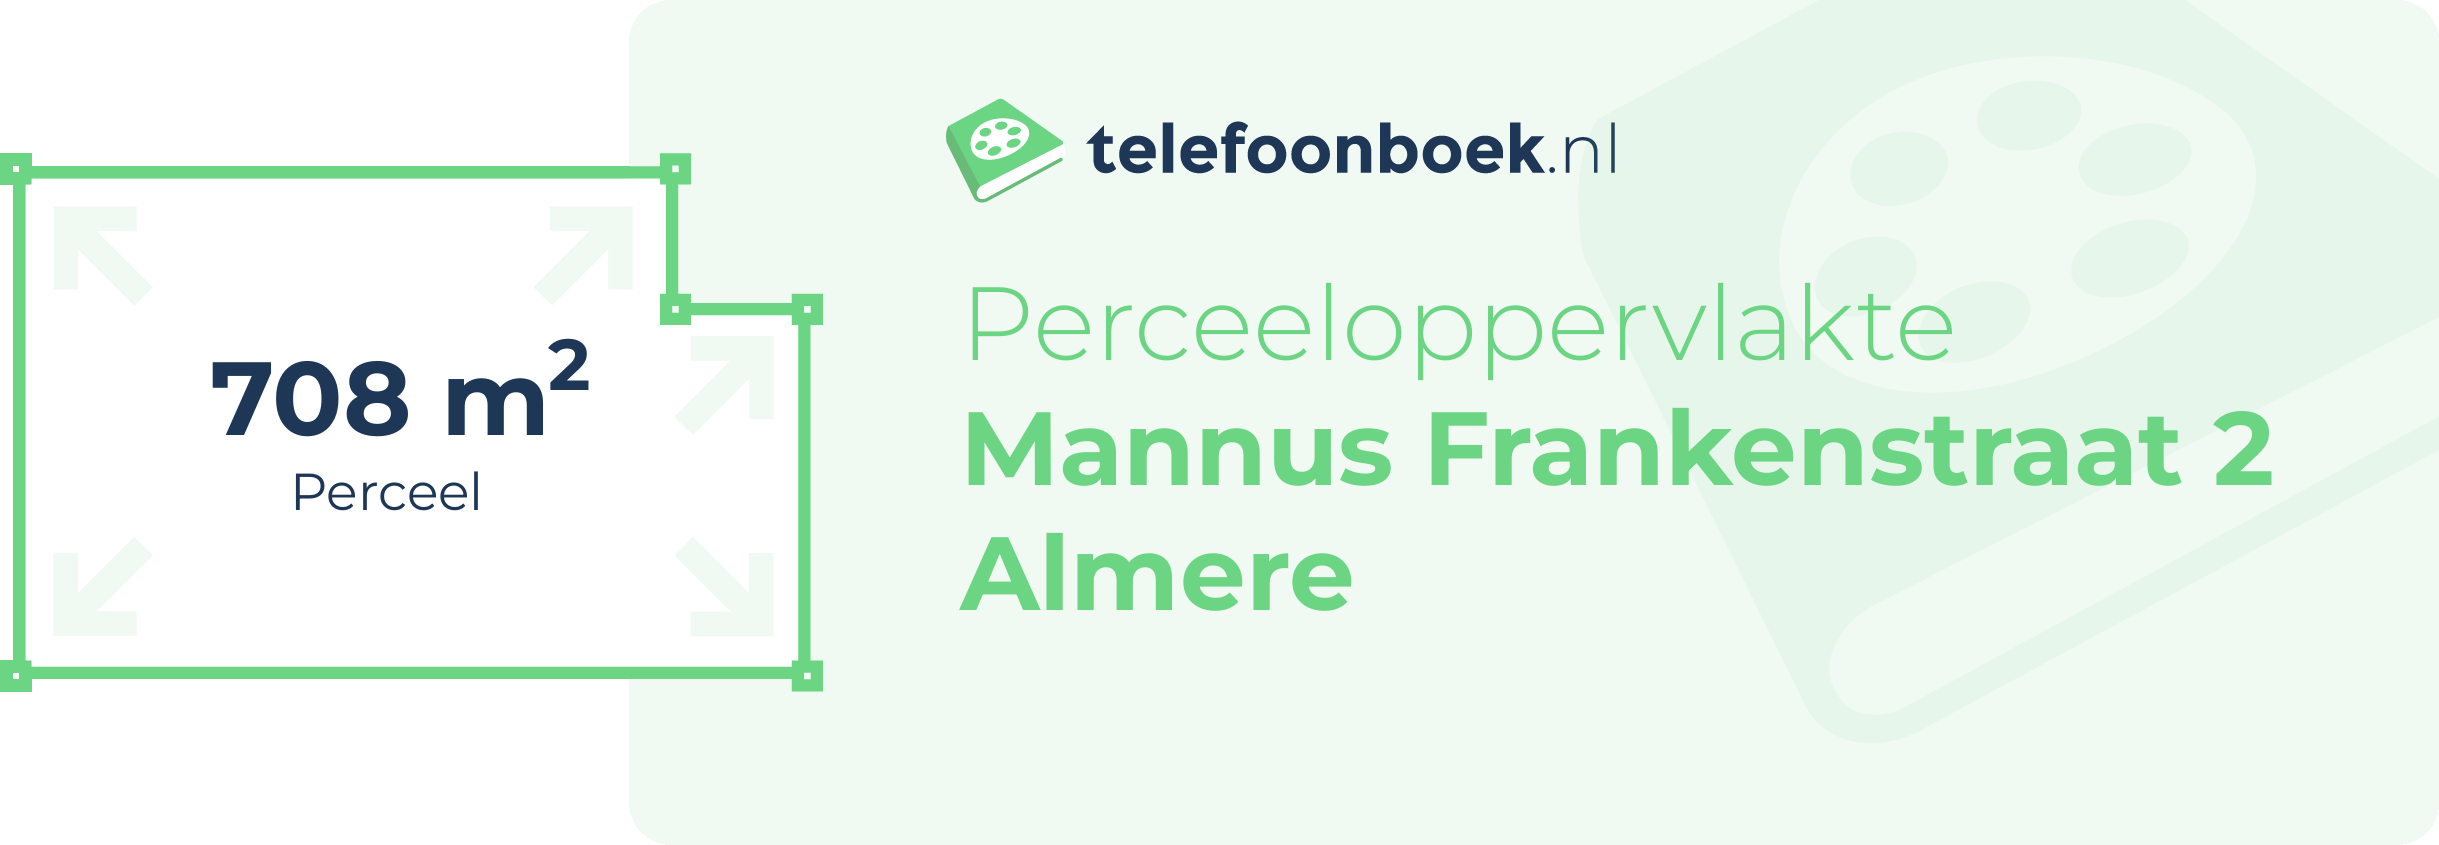 Perceeloppervlakte Mannus Frankenstraat 2 Almere